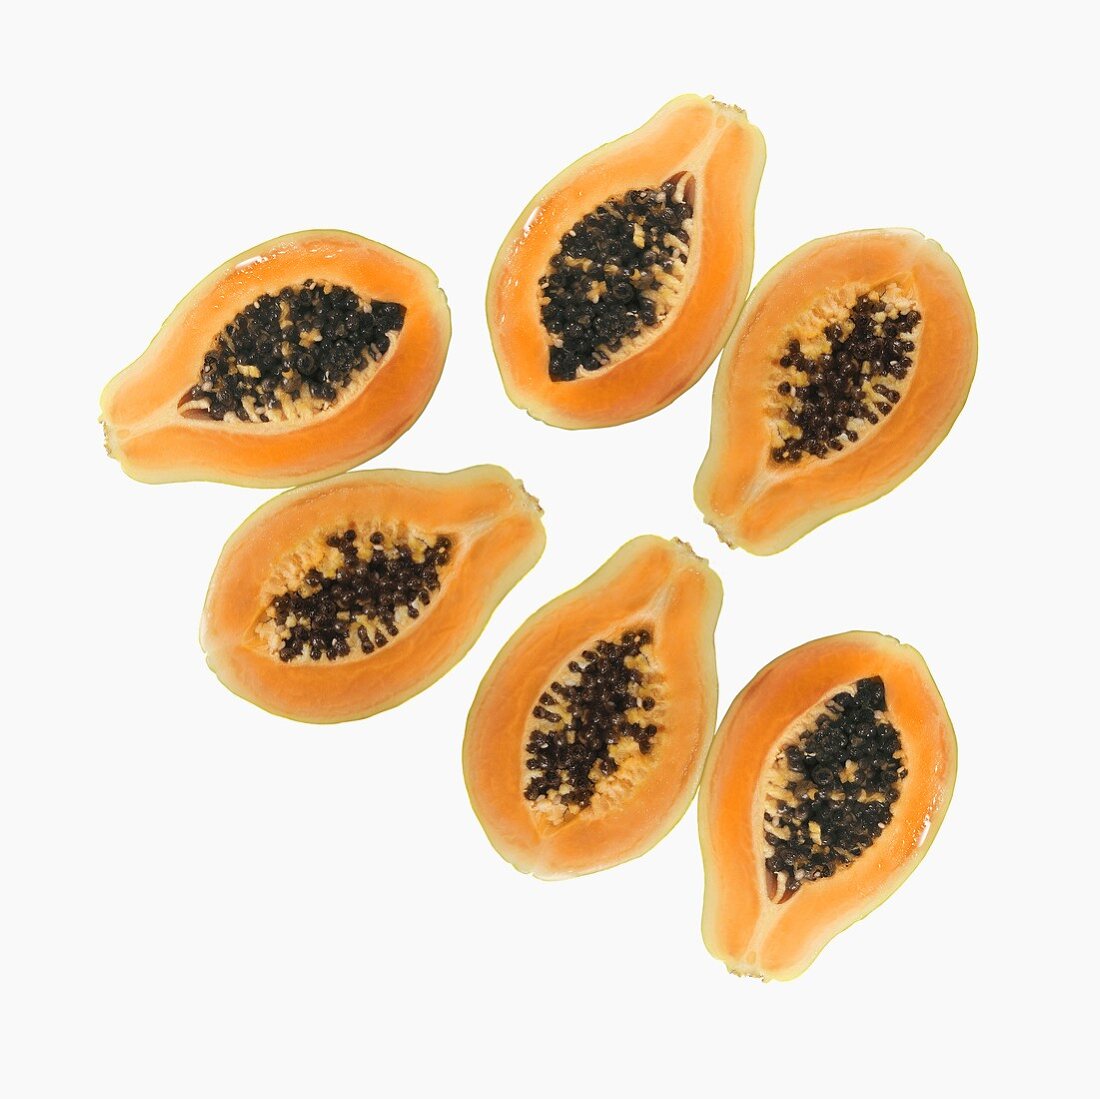 Six papaya halves